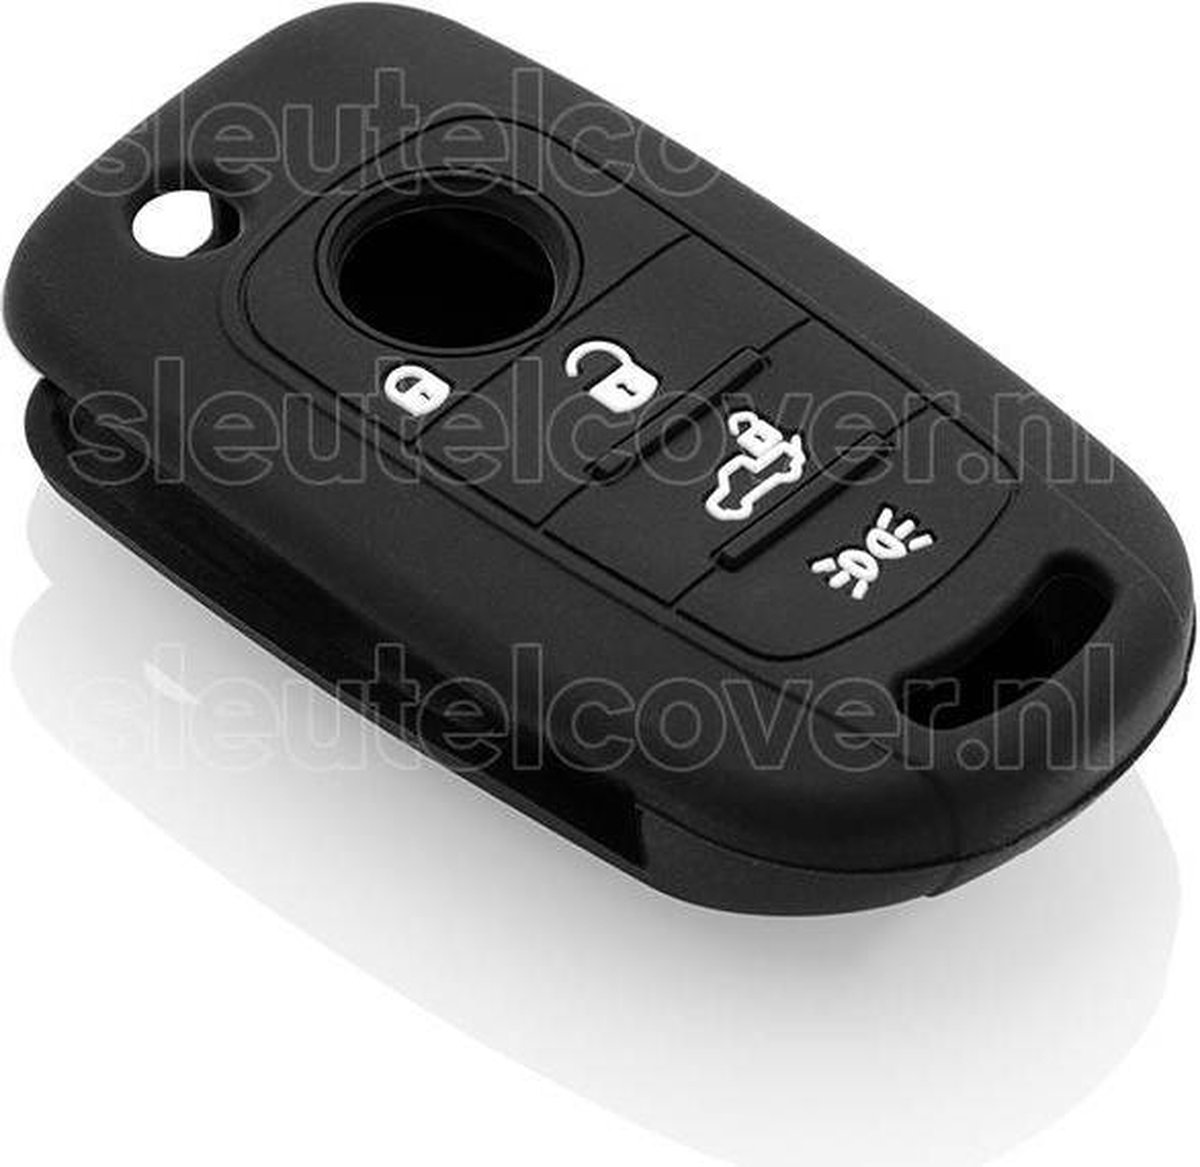 Autosleutel Hoesje geschikt voor Fiat - SleutelCover - Silicone Autosleutel Cover - Sleutelhoesje Zwart